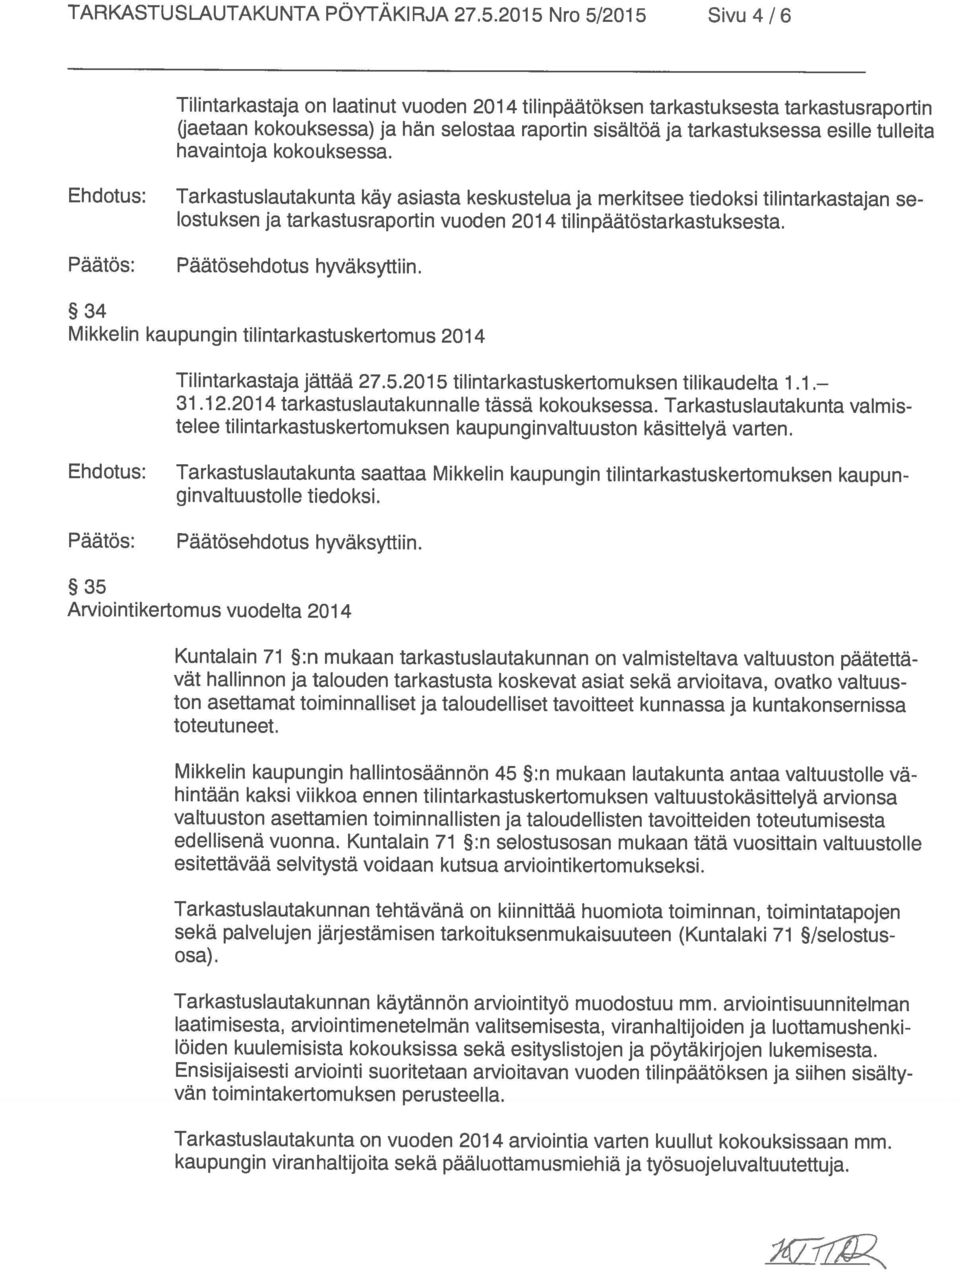 34 Mikkelin kaupungin tilintarkastuskertomus 2014 (jaetaan kokouksessa) ja hän selostaa raportin sisältöä ja tarkastuksessa esille tulleita Tarkastuslautakunta on vuoden 201 4 arviointia varten